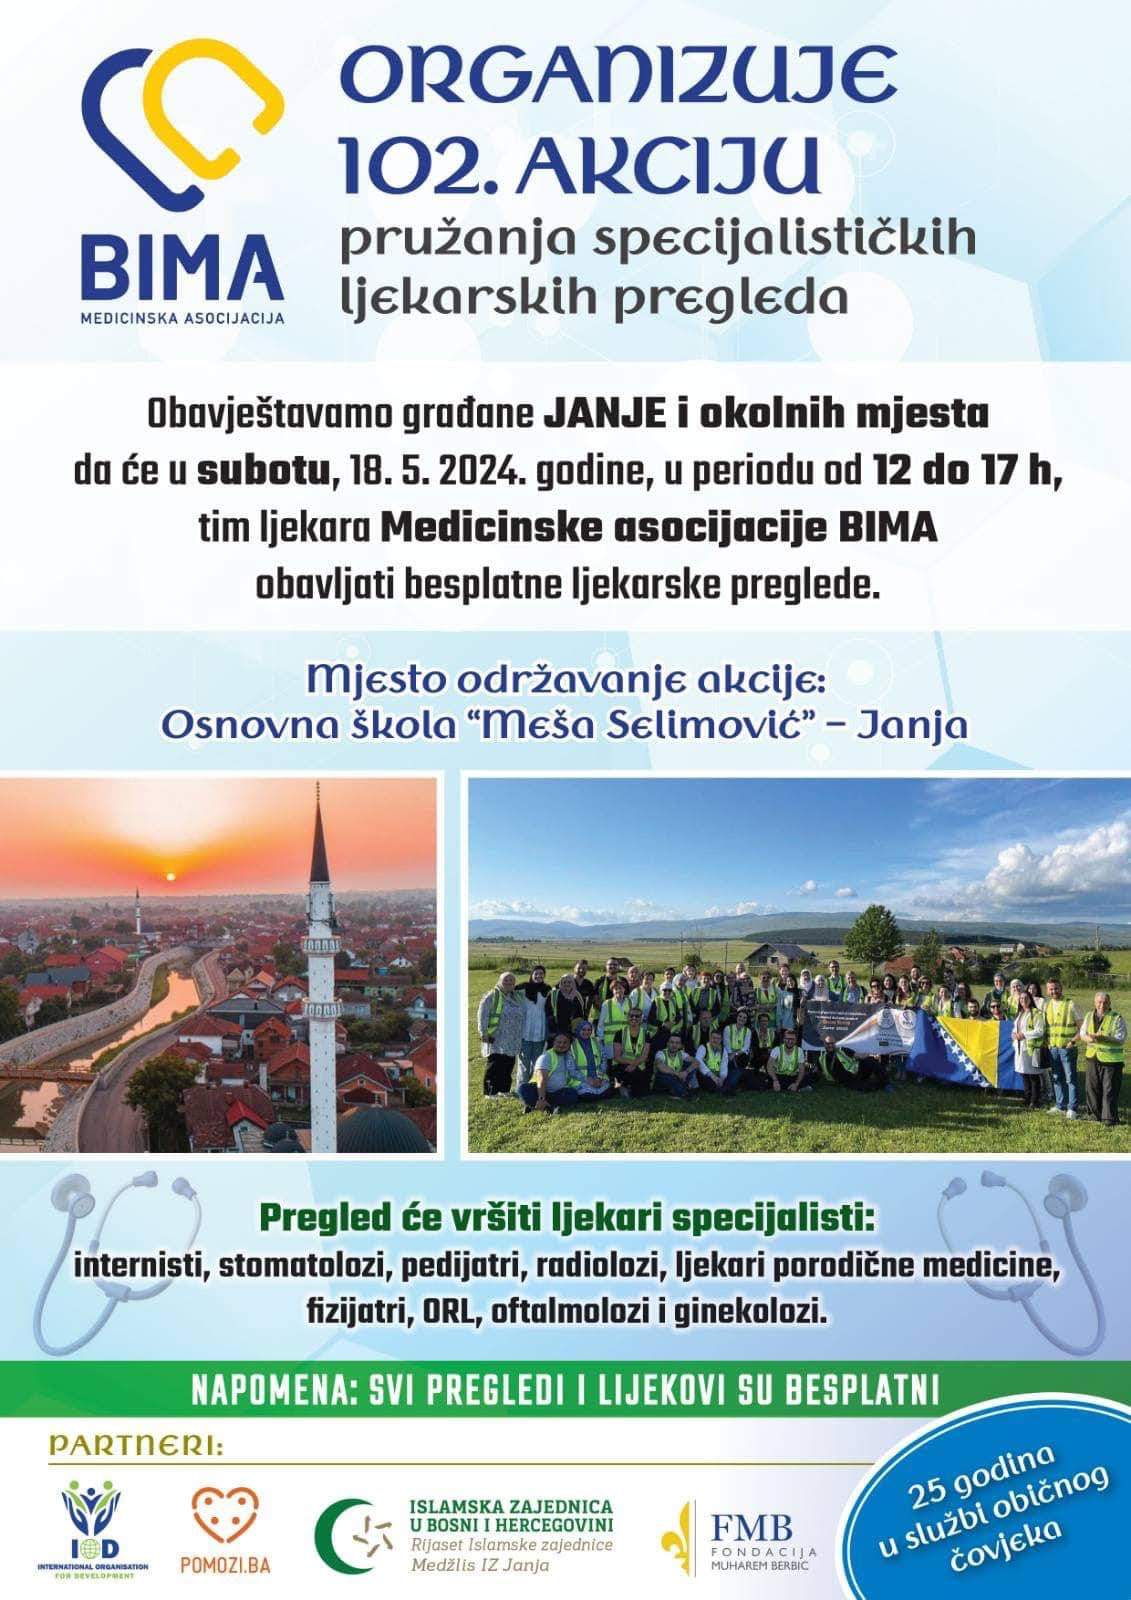 unnamed.jpg - BIMA organizuje 102. akciju pružanja specijalističkih ljekarskih pregleda